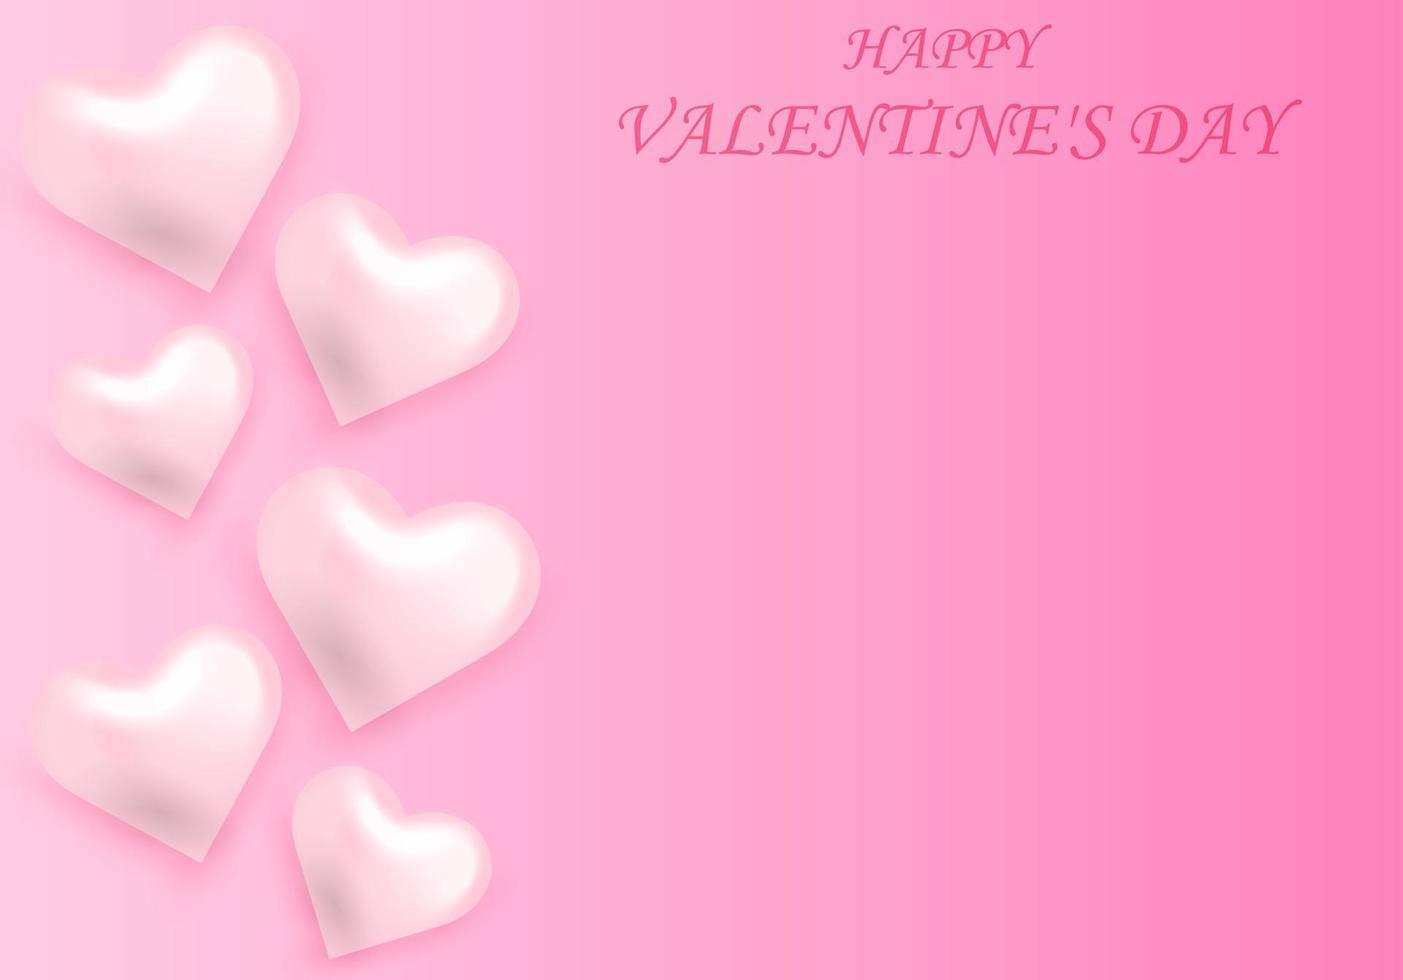 roze Valentijnsdag dag achtergrond. abstract achtergrond met roze harten. decoratief element voor partij uitnodiging ontwerp of groet kaarten.vector illustratie vector